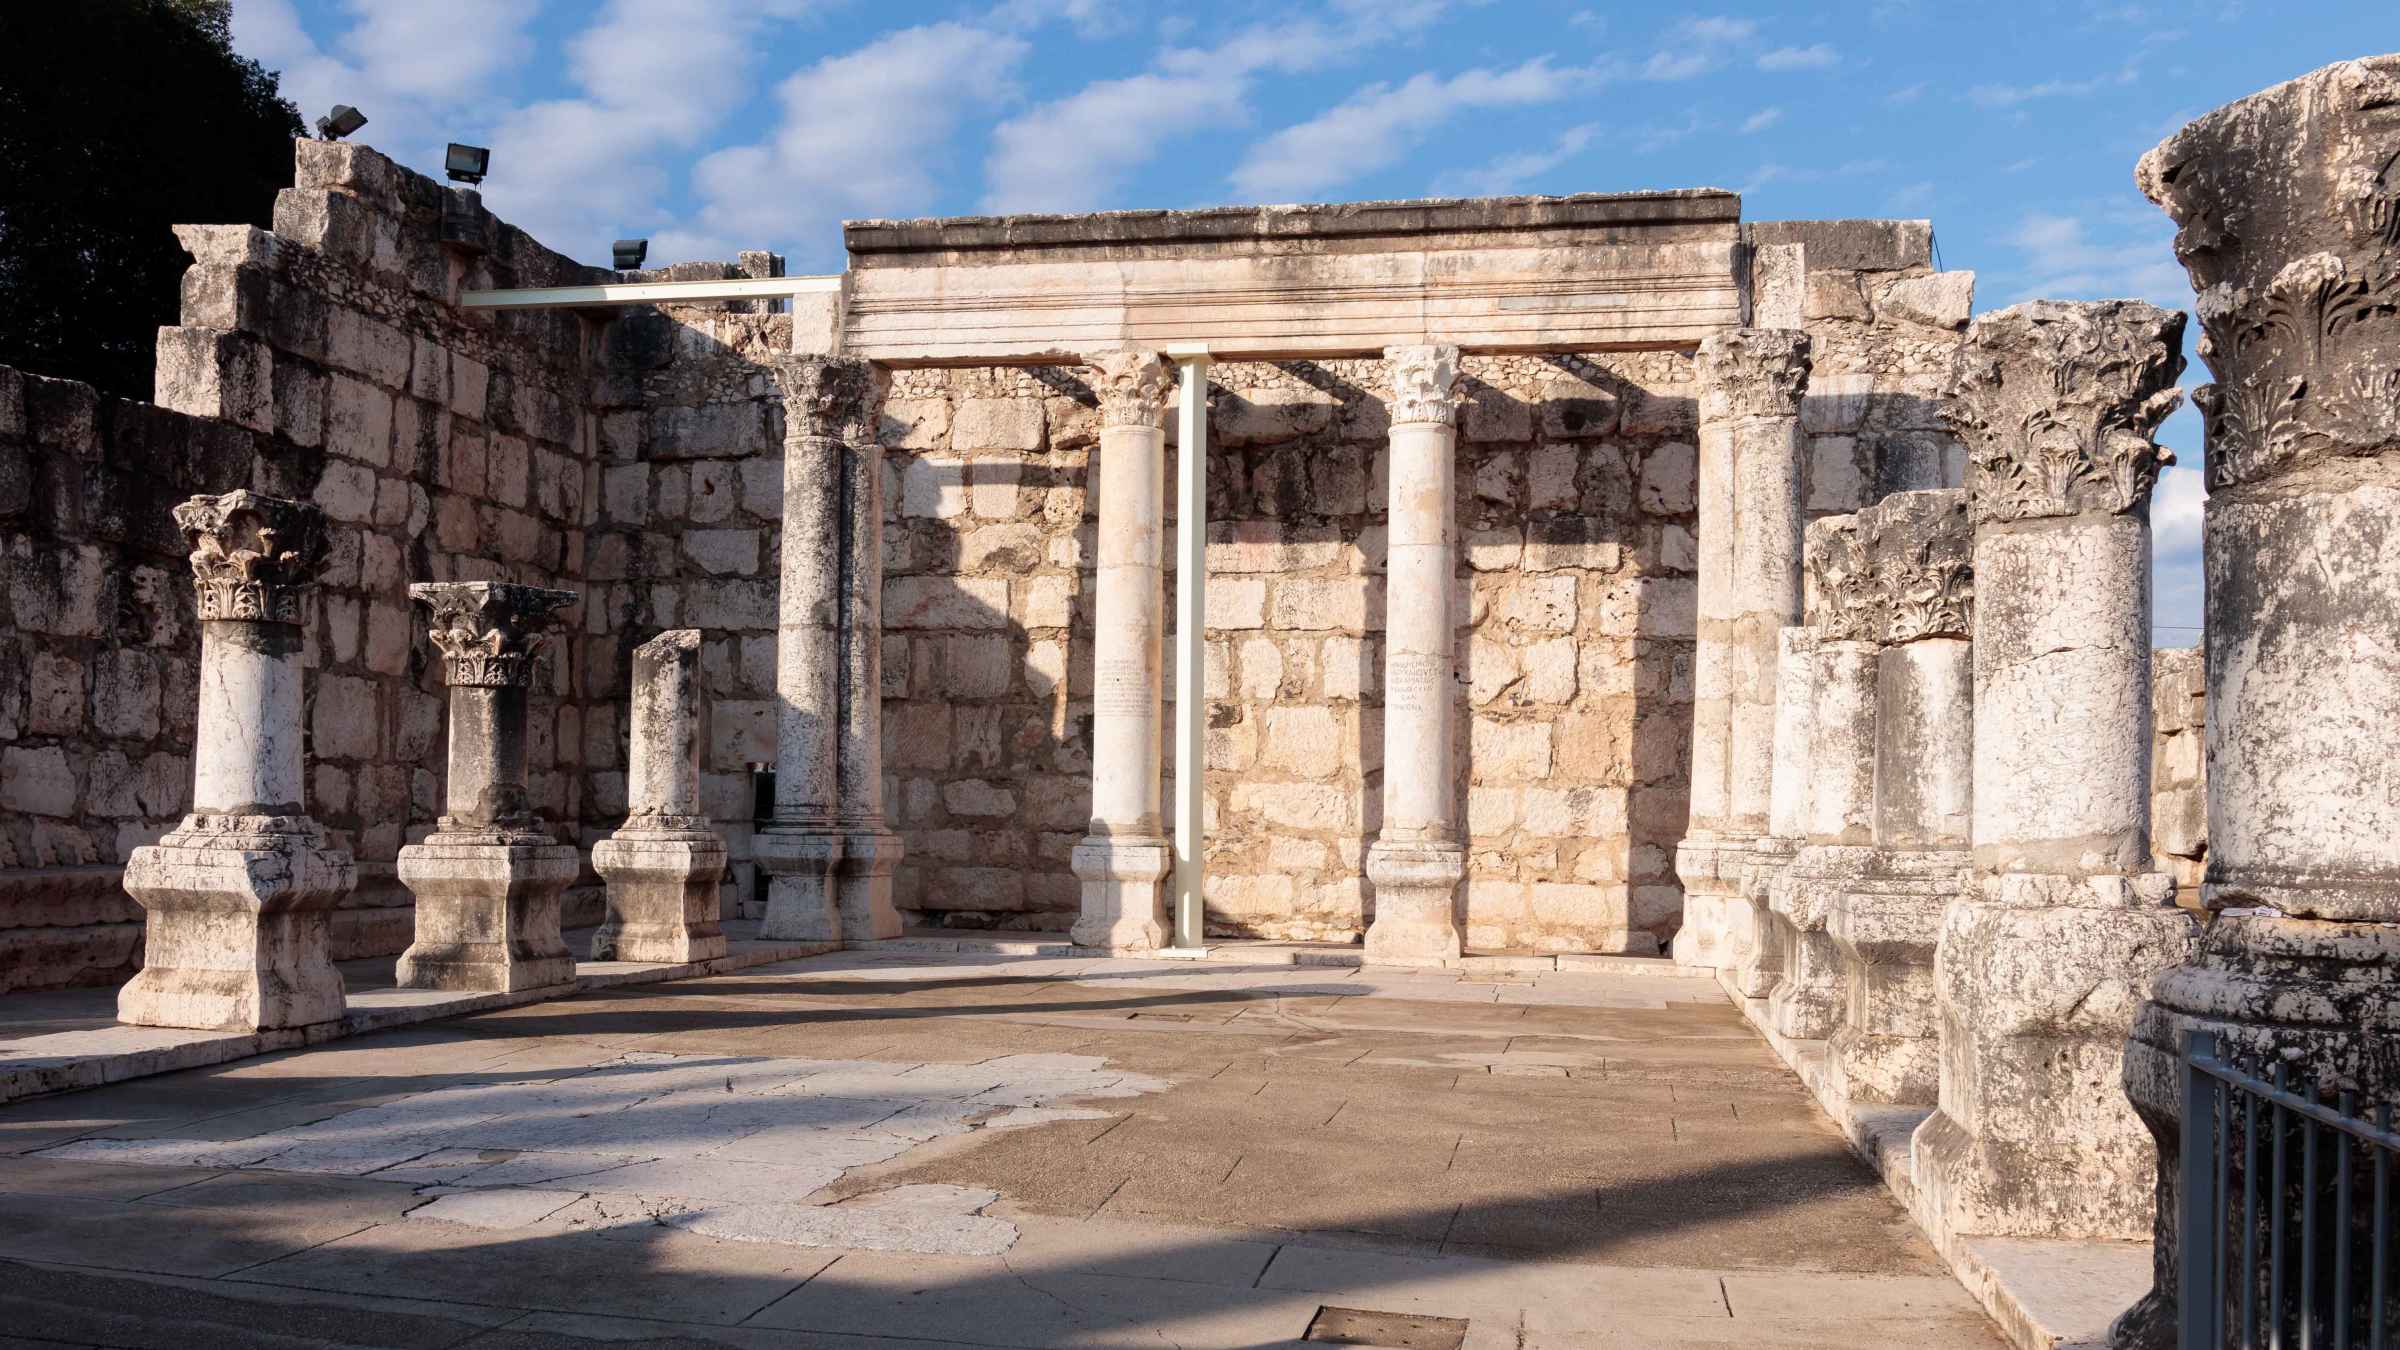 BESTE Capernaum Historie og kulturarv 2022 - GRATIS avbestilling |  GetYourGuide